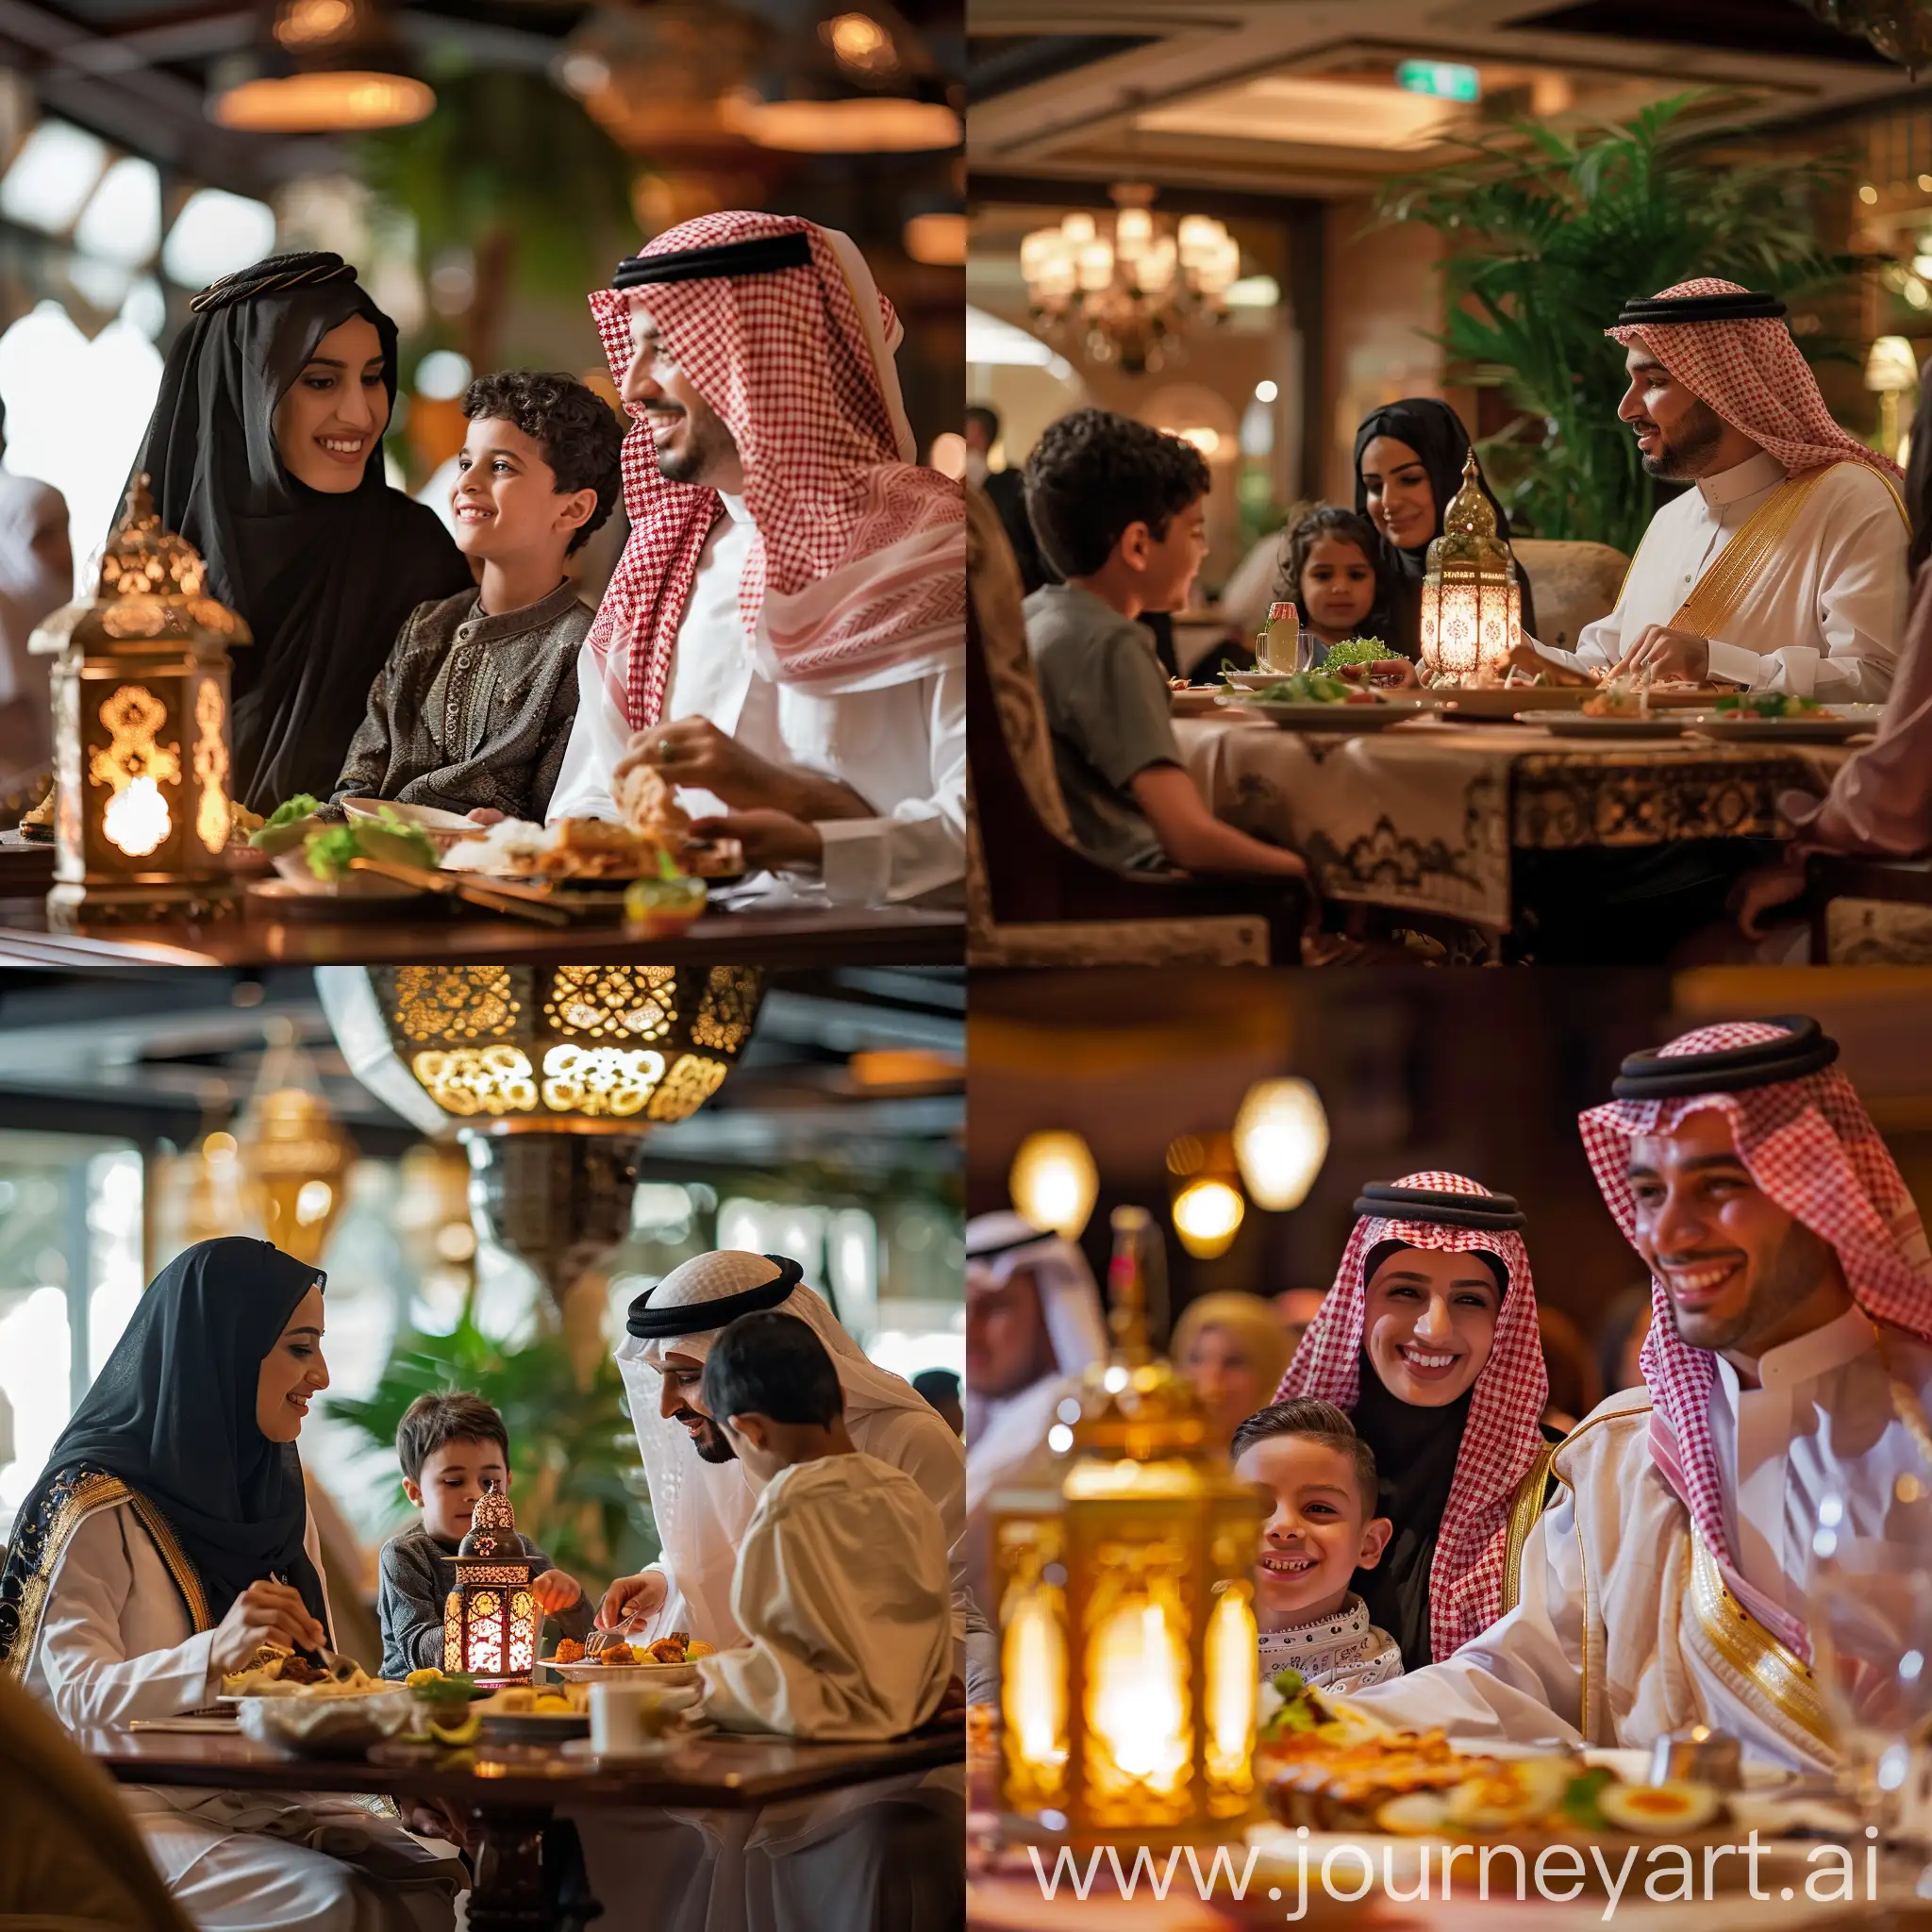 عائلة عربية سعودية تجلس في مطعم لتناول وجبة الافطار لرمضان بوجود فانوس رمضان على الطاولة 